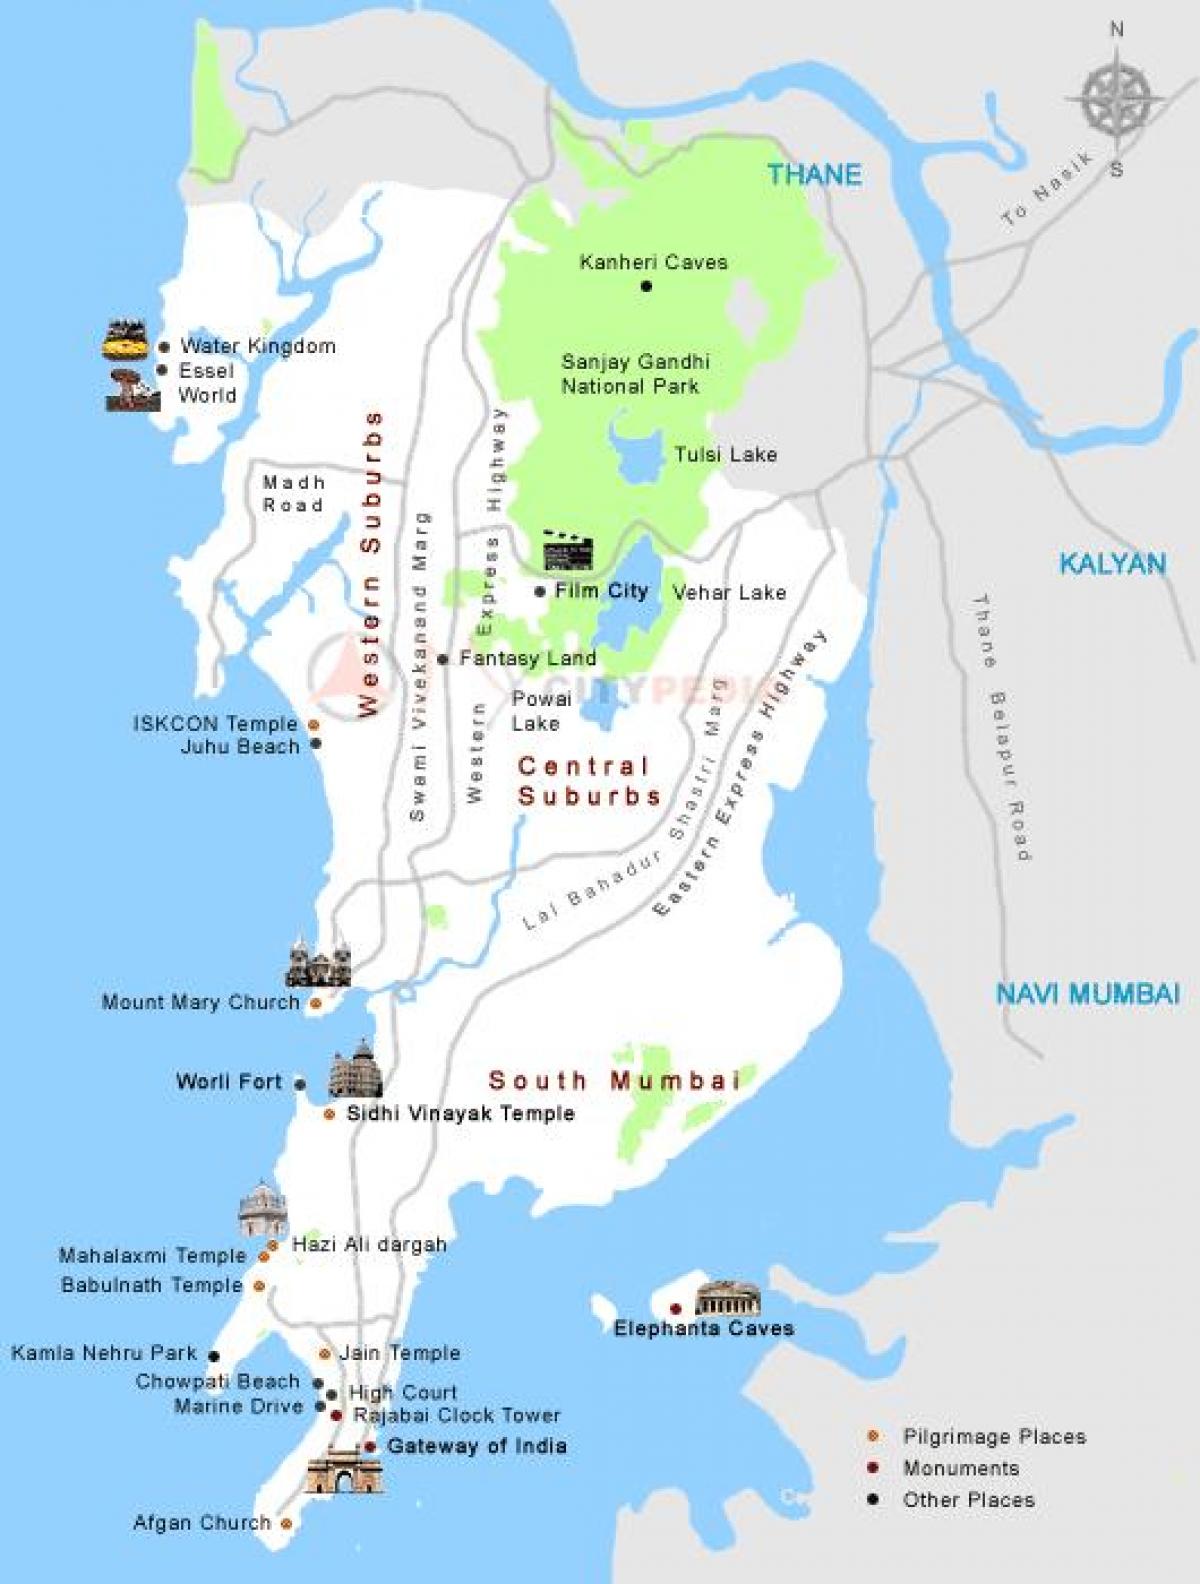 ボンベイ市内の観光地図